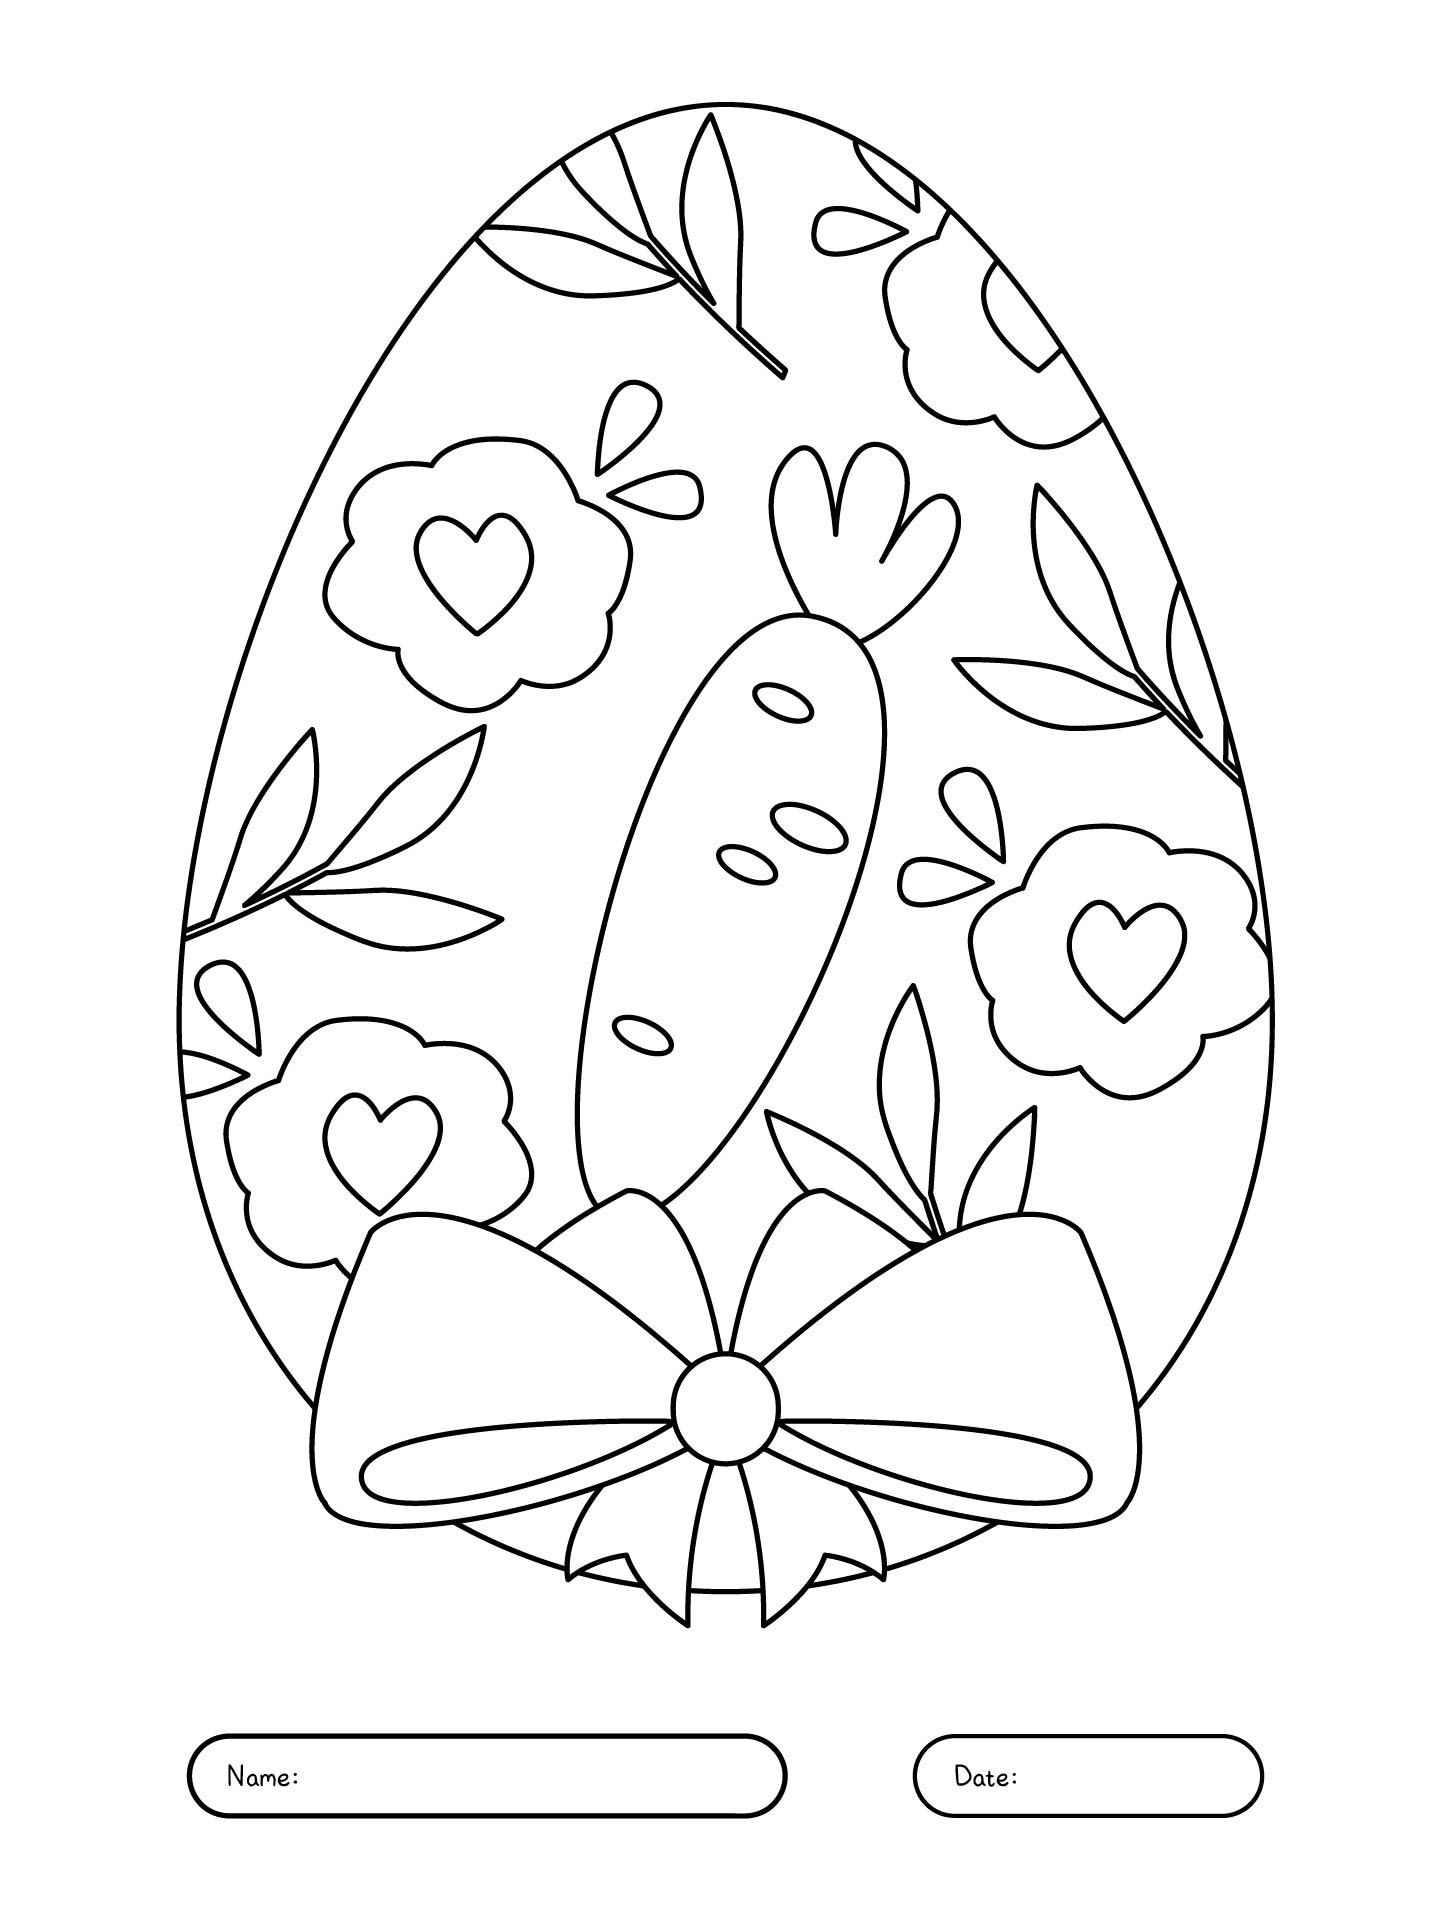 Printable Easter Egg